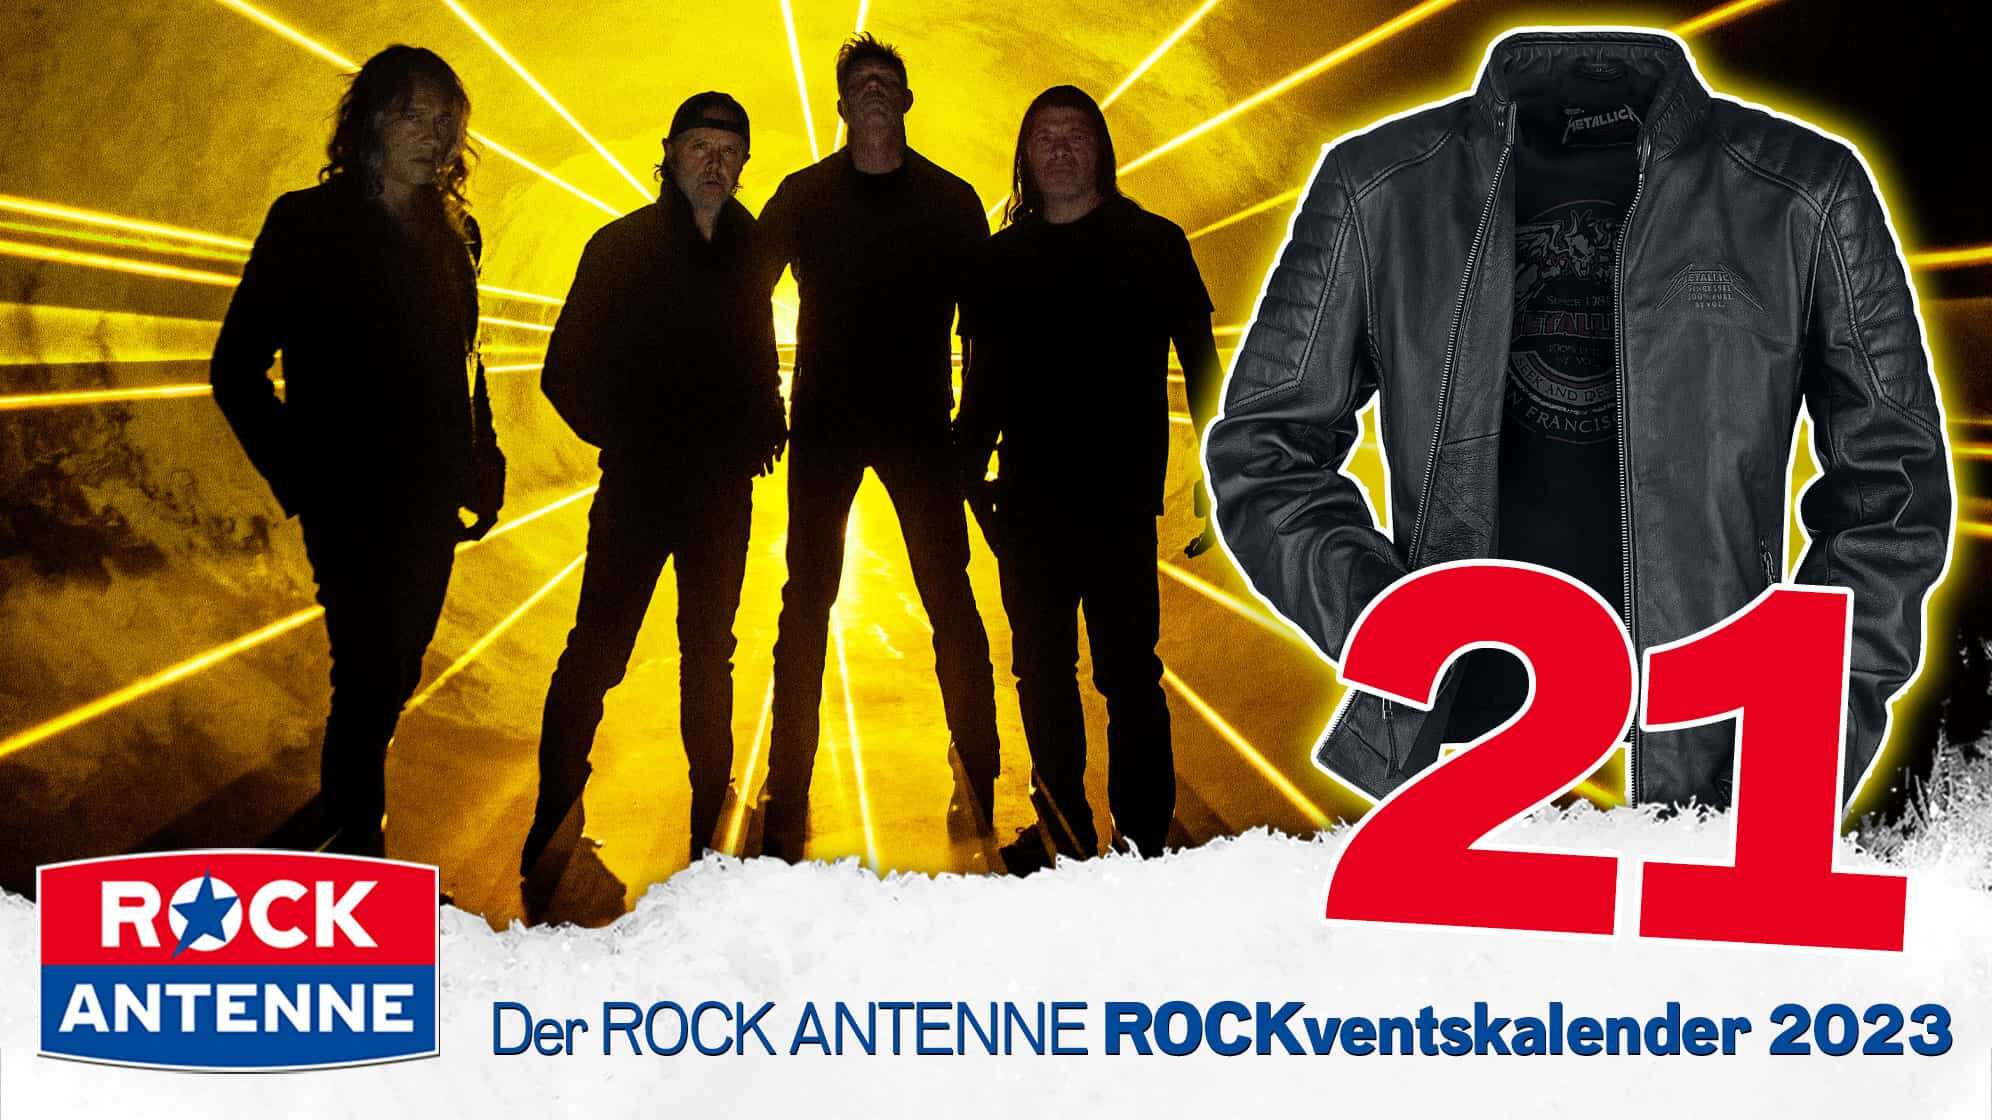 ROCK ANTENNE ROCKventskalender Türchen 21: Zwei Konzerttickets für Metallica live in München 2024 und eine Metallica Signature Lederjacke